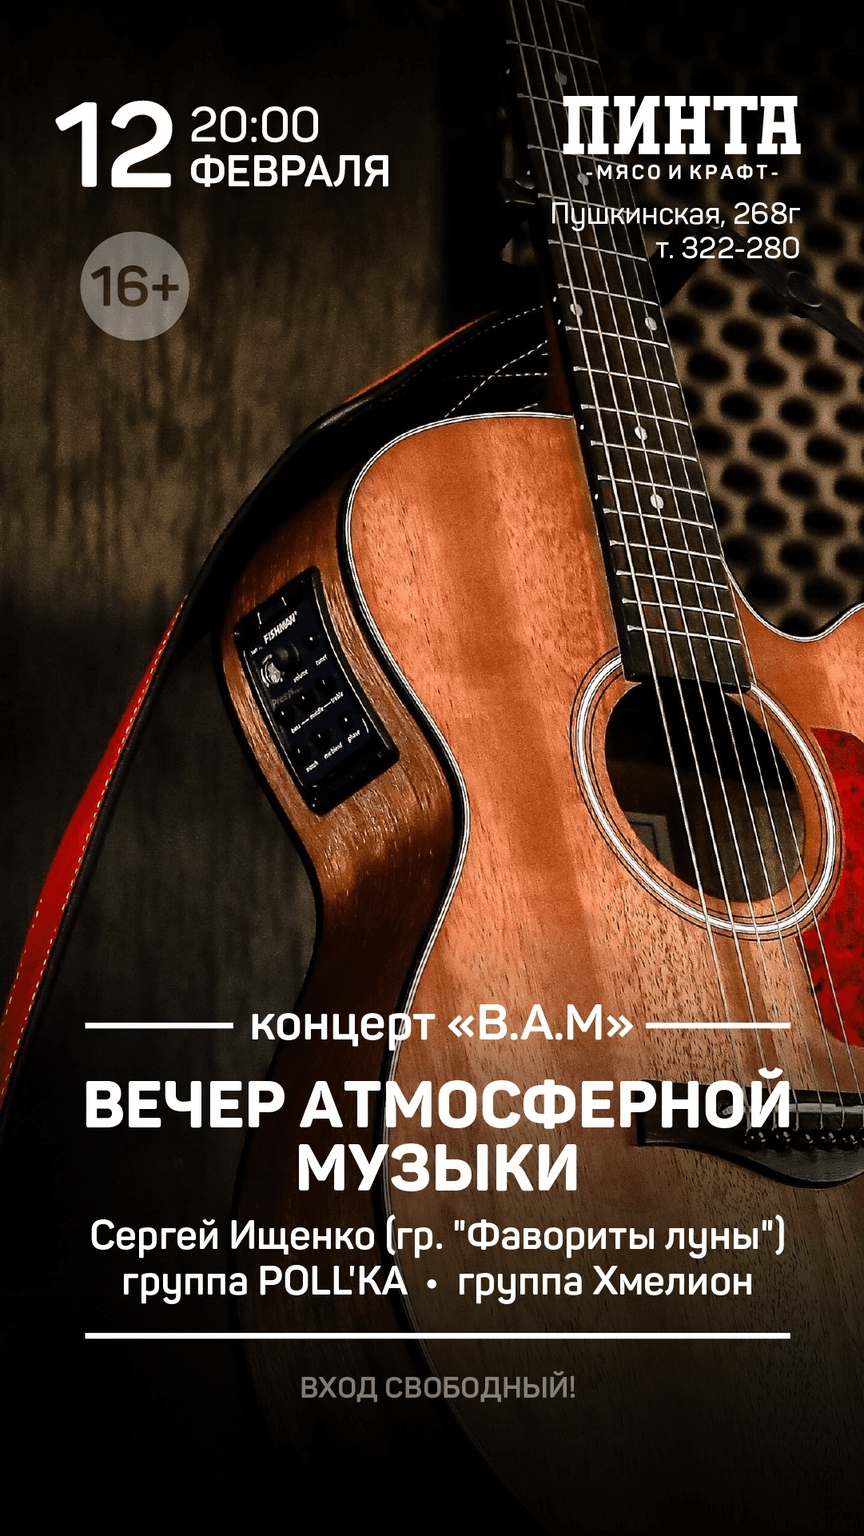 Афиша Ижевска — Вечер атмосферной музыки в «Пинте»